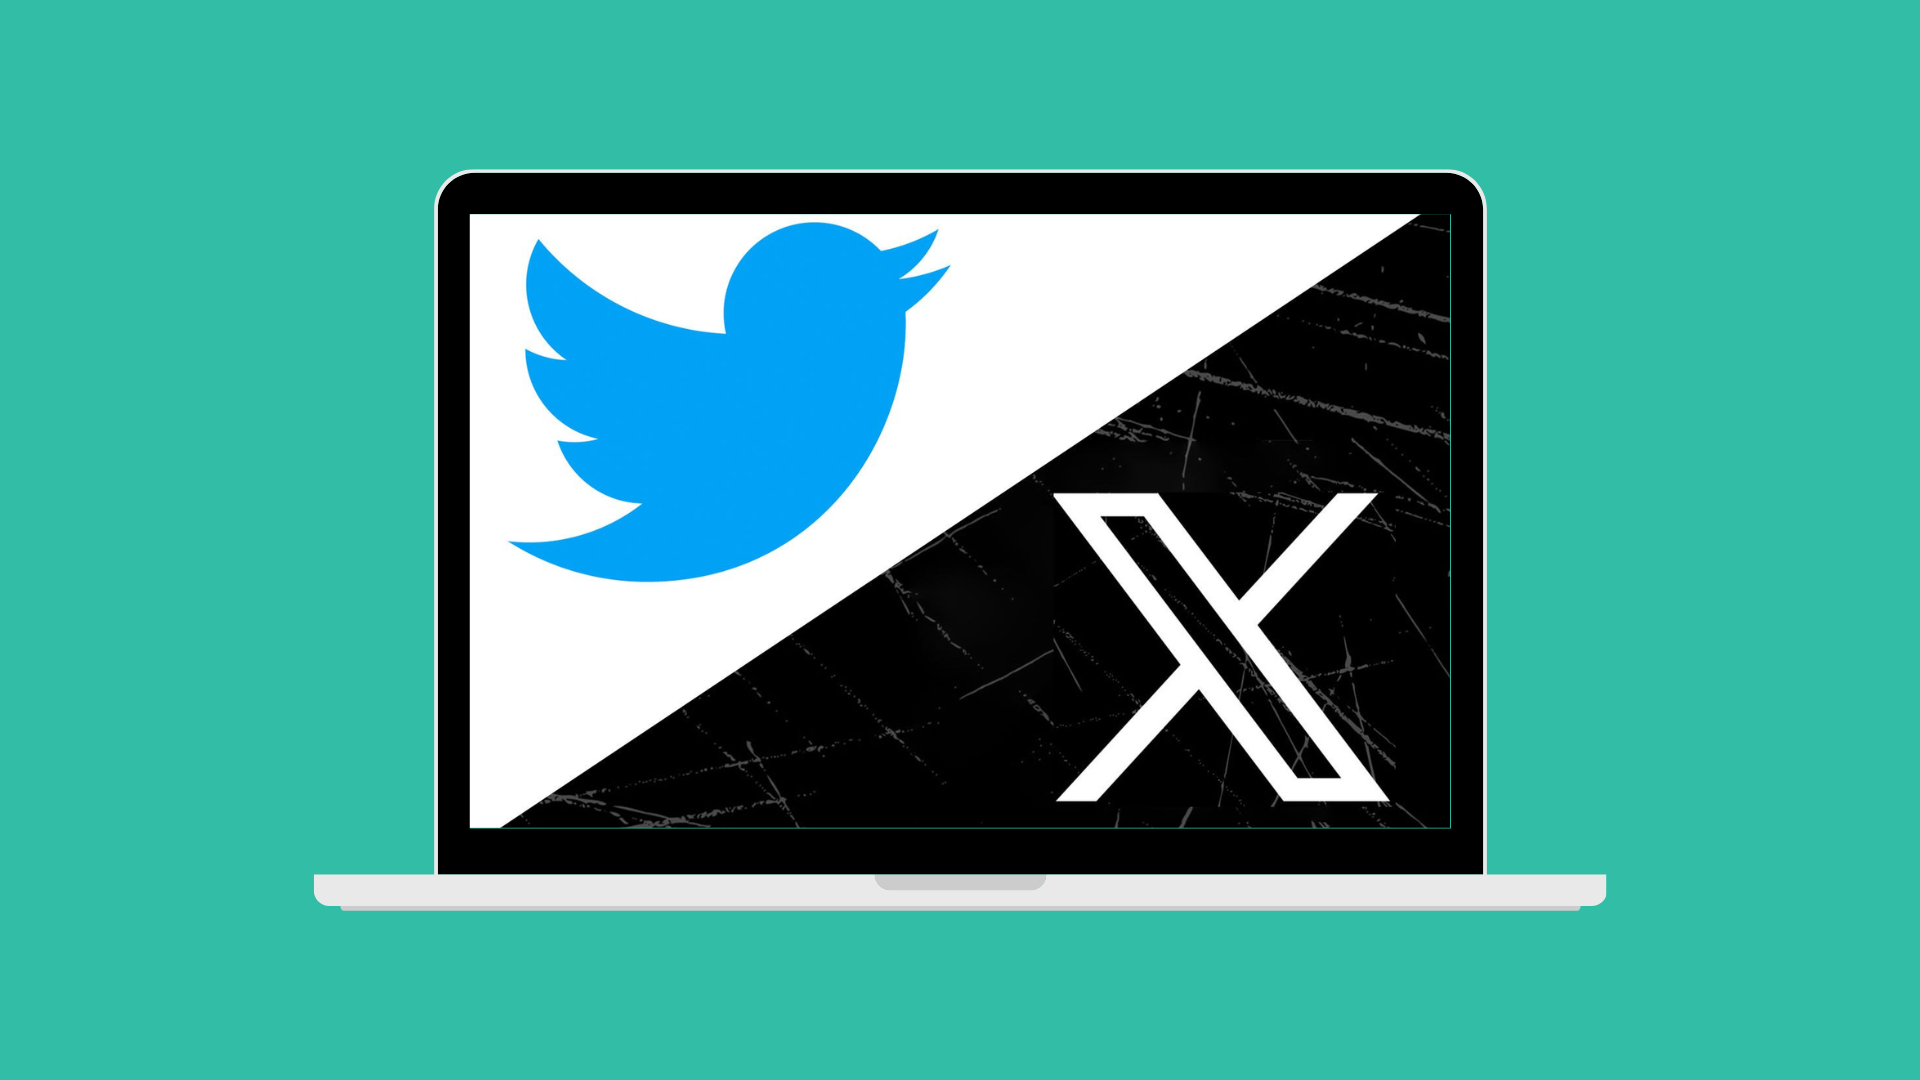 Usuarios de X (Twitter) cansados de anuncios criptográficos maliciosos